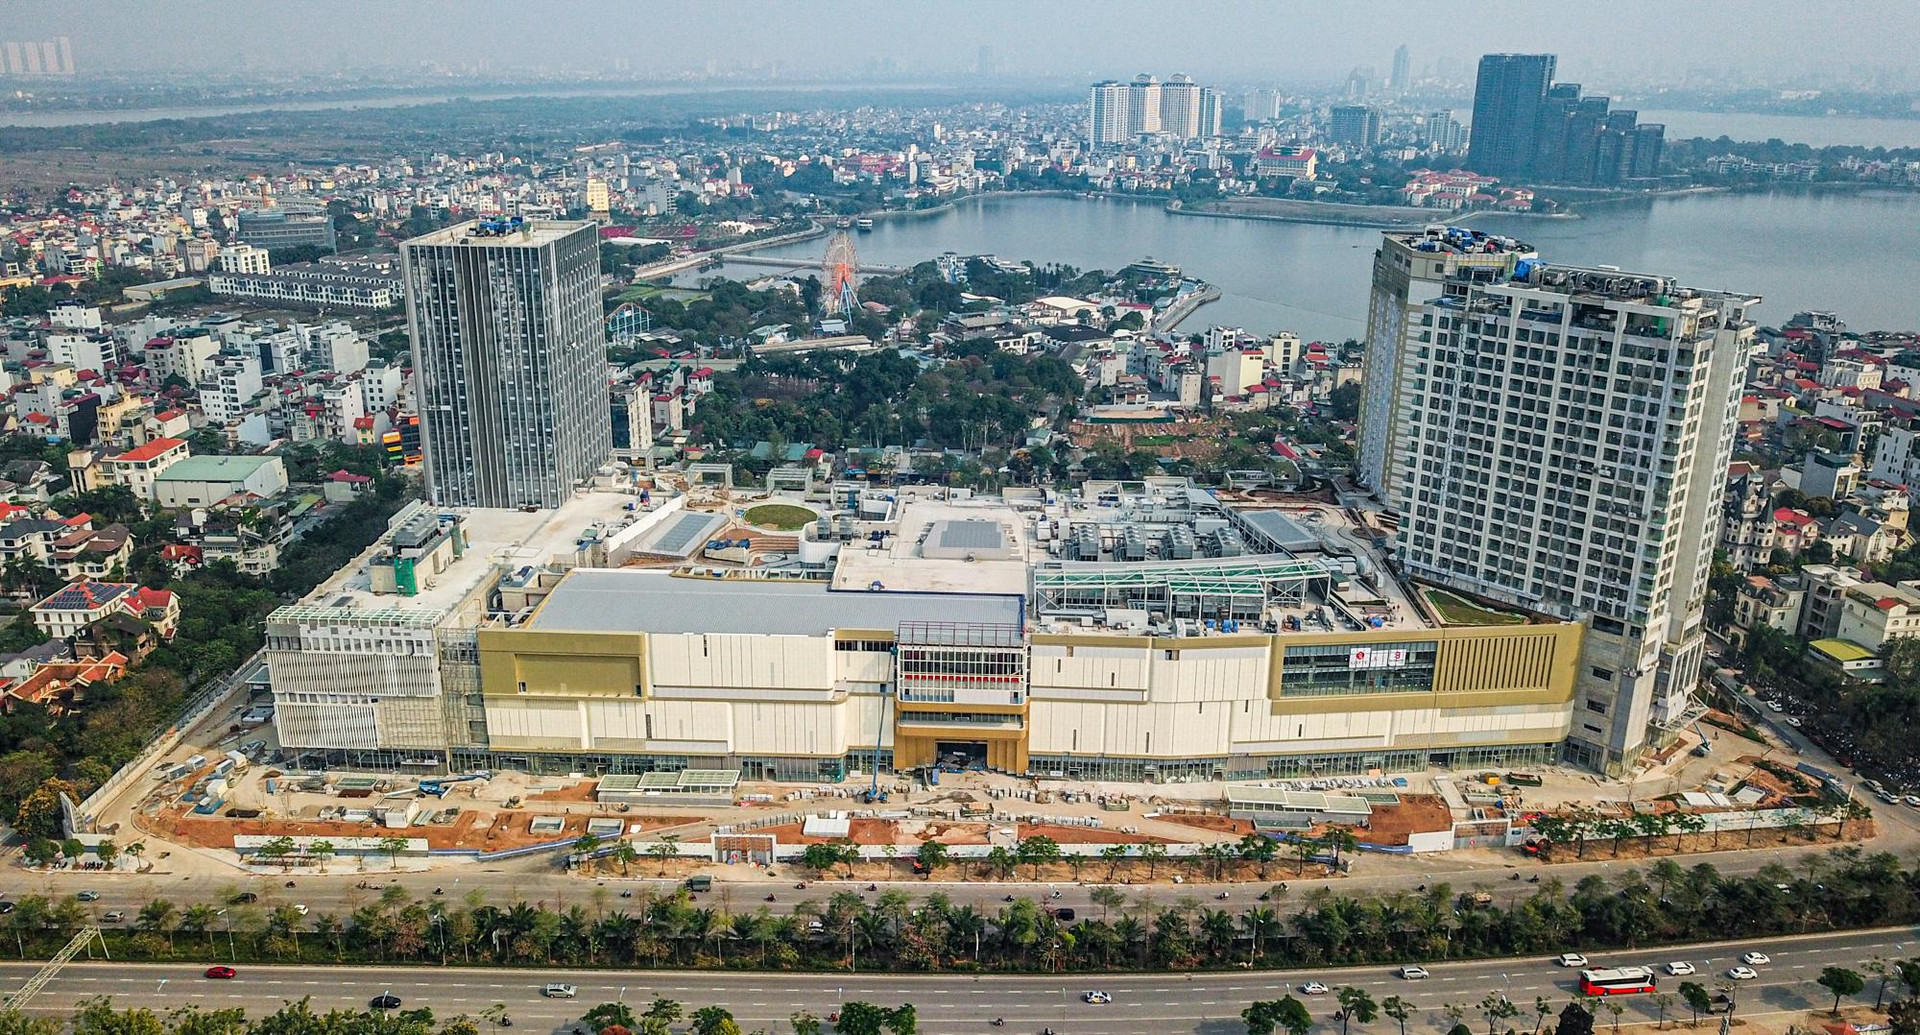 ‏[Photo Essay] Chung cư quanh TTTM đắt nhất thủ đô Lotte Mall Hanoi - Võ Chí Công đã hình thành mặt bằng giá mới lên đến 100 triệu đồng/m2 - Ảnh 2.